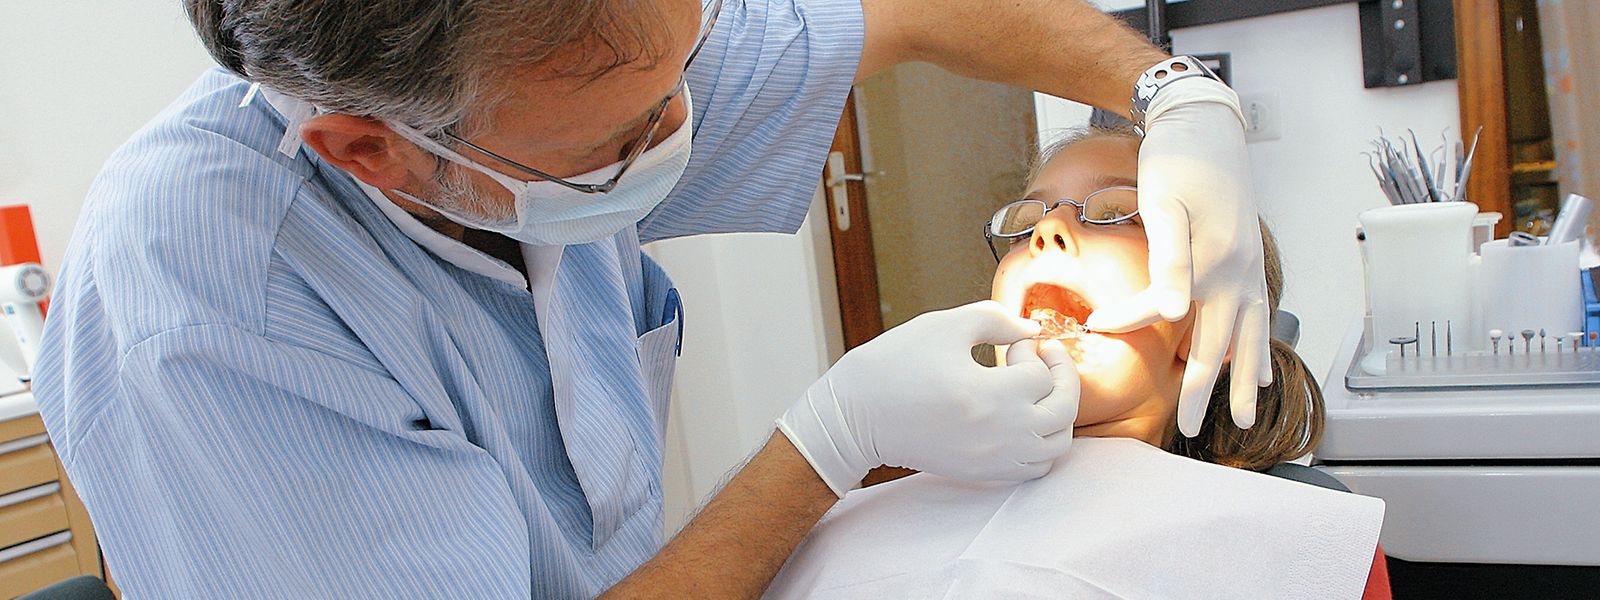 Les améliorations des soins dentaires, déjà annoncées en mai 2021, sont toujours en cours d'élaboration.